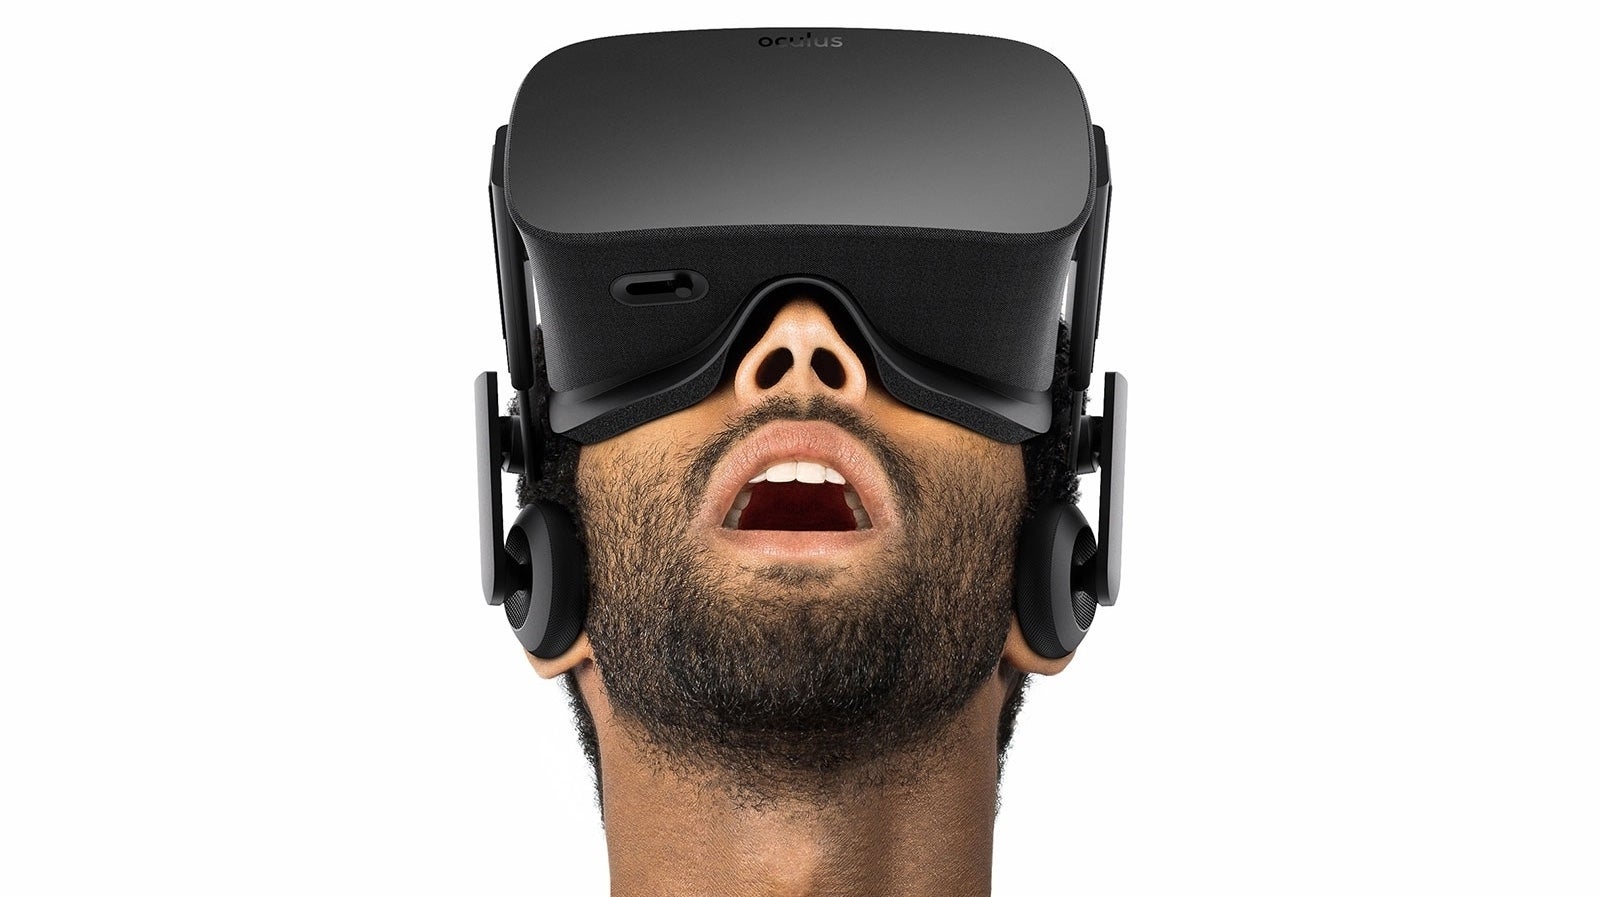 Imagen para Un juez reduce la condena a Oculus en el caso ZeniMax a 250 millones de dólares